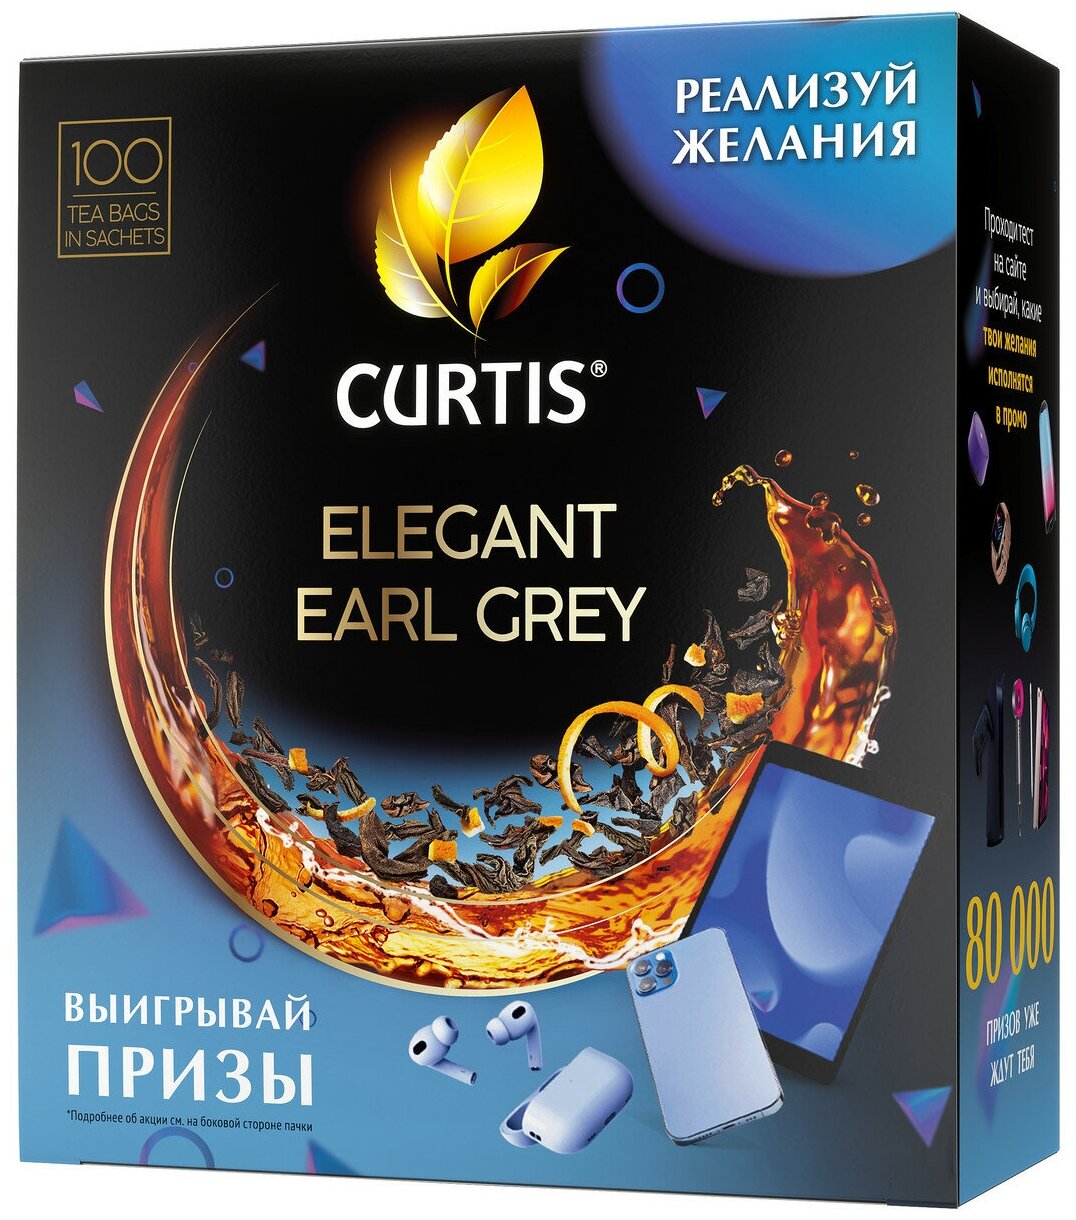 Чай черный Curtis Elegant Earl Grey в пакетиках, 100 пак.